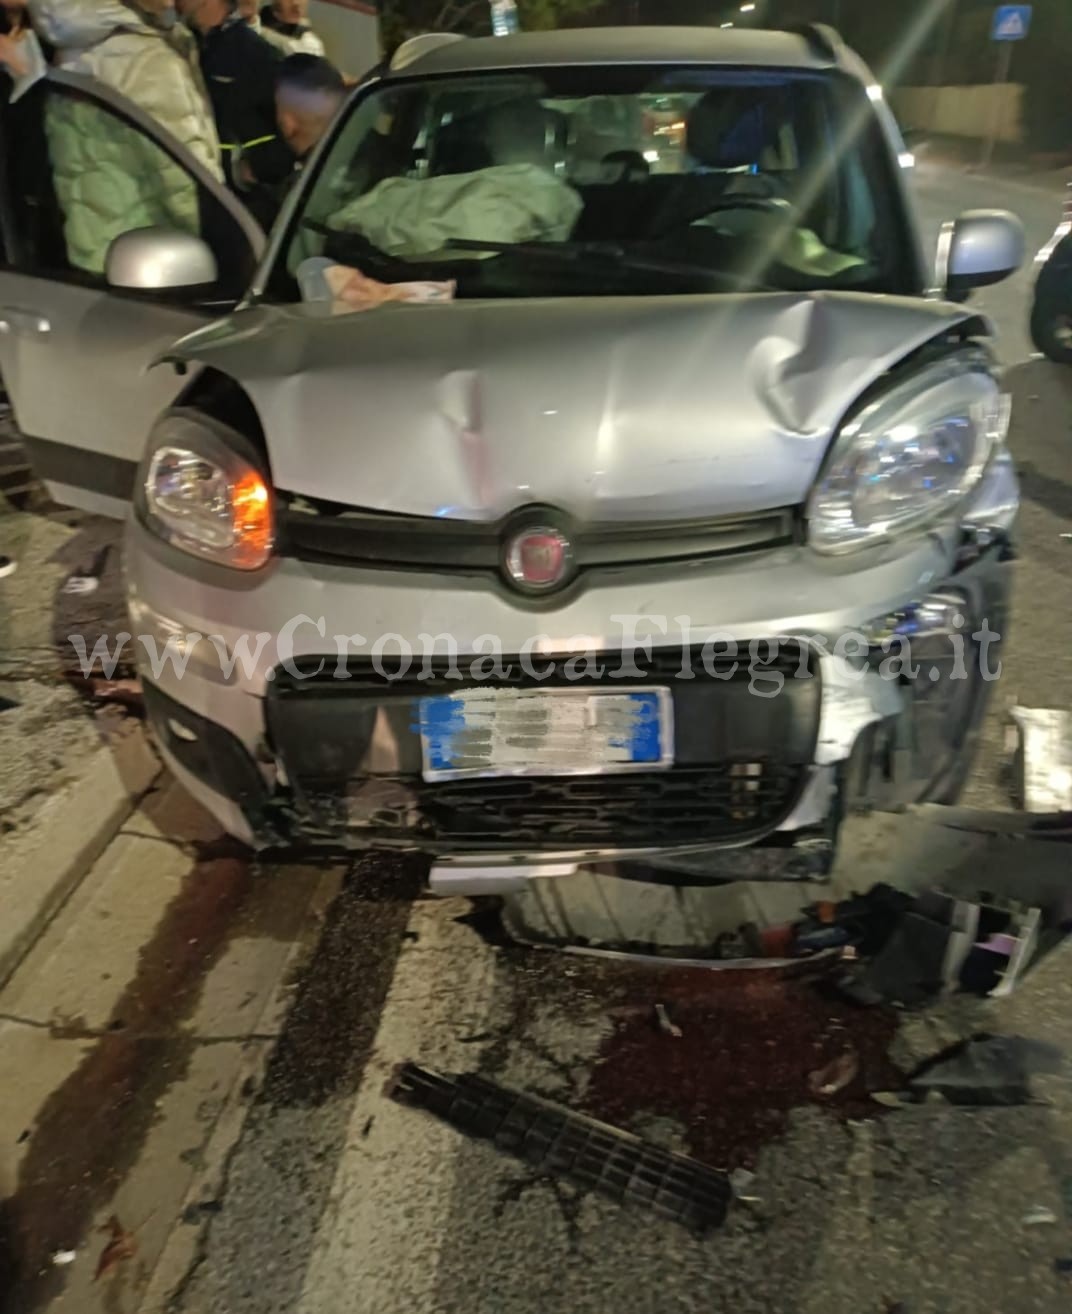 Spaventoso incidente a Pozzuoli: dieci giovani feriti all’uscita da una discoteca – LE FOTO